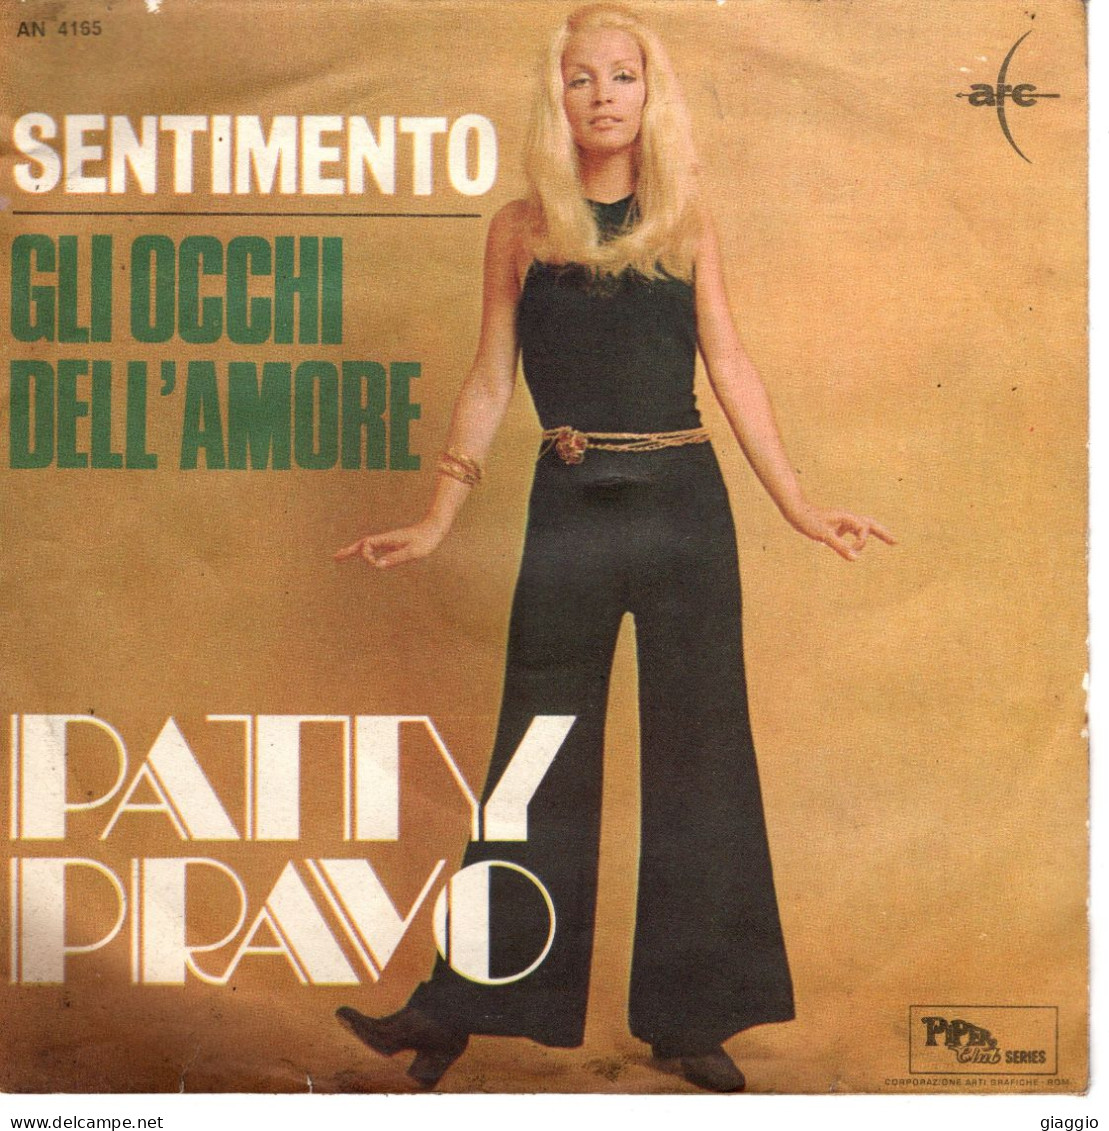 °°° 524) 45 GIRI - PATTY PRAVO - GLI OCCHI DELL'AMORE / SENTIMENTO °°° - Other - Italian Music